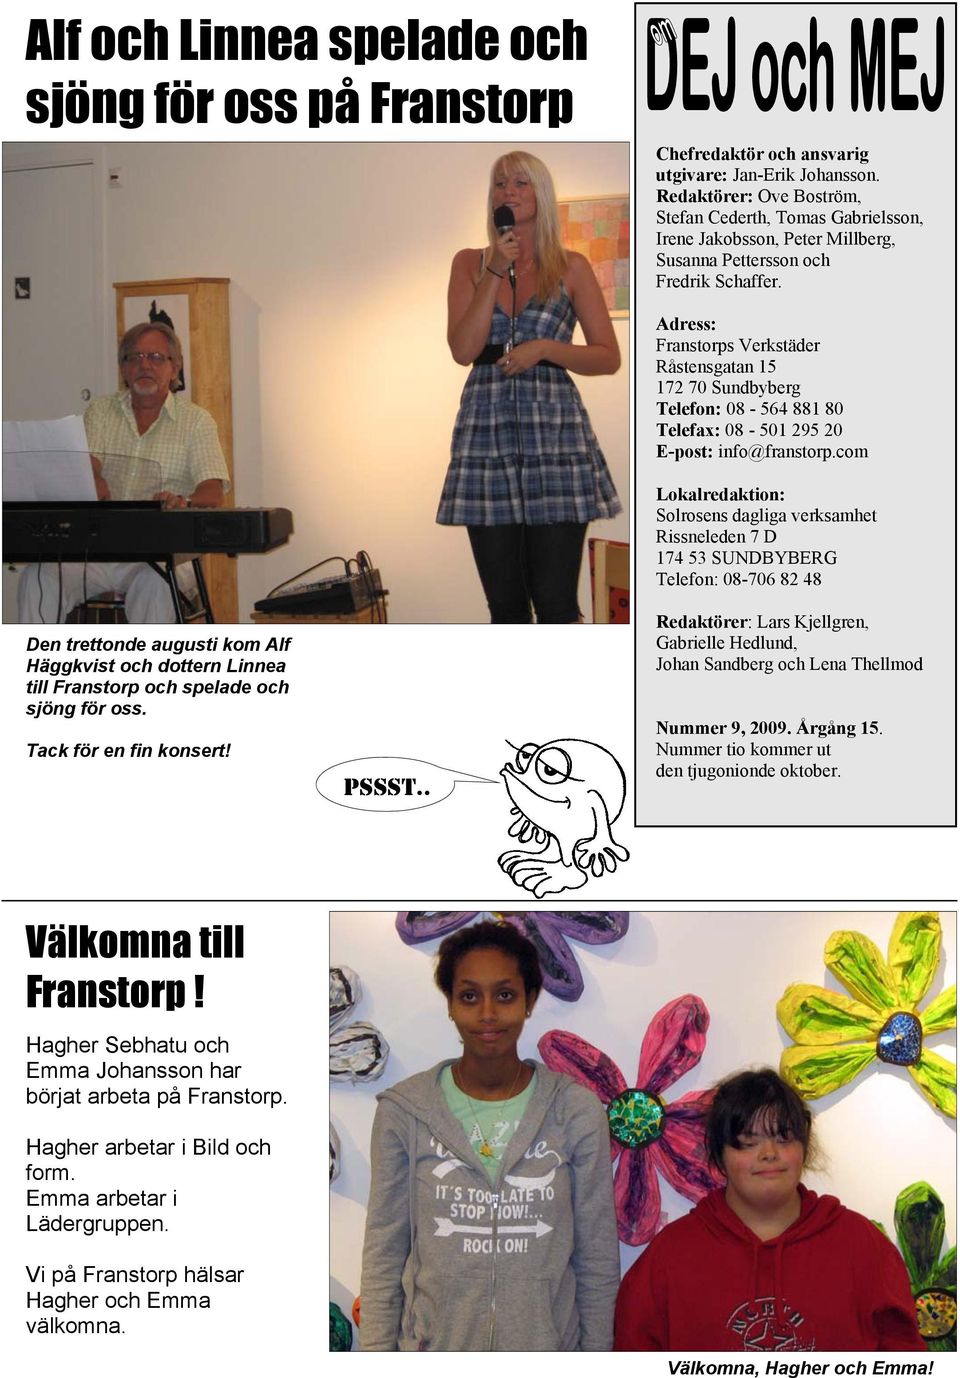 Den trettonde augusti kom Alf Häggkvist och dottern Linnea till Franstorp och spelade och sjöng för oss. Tack för en fin konsert! PSSST.